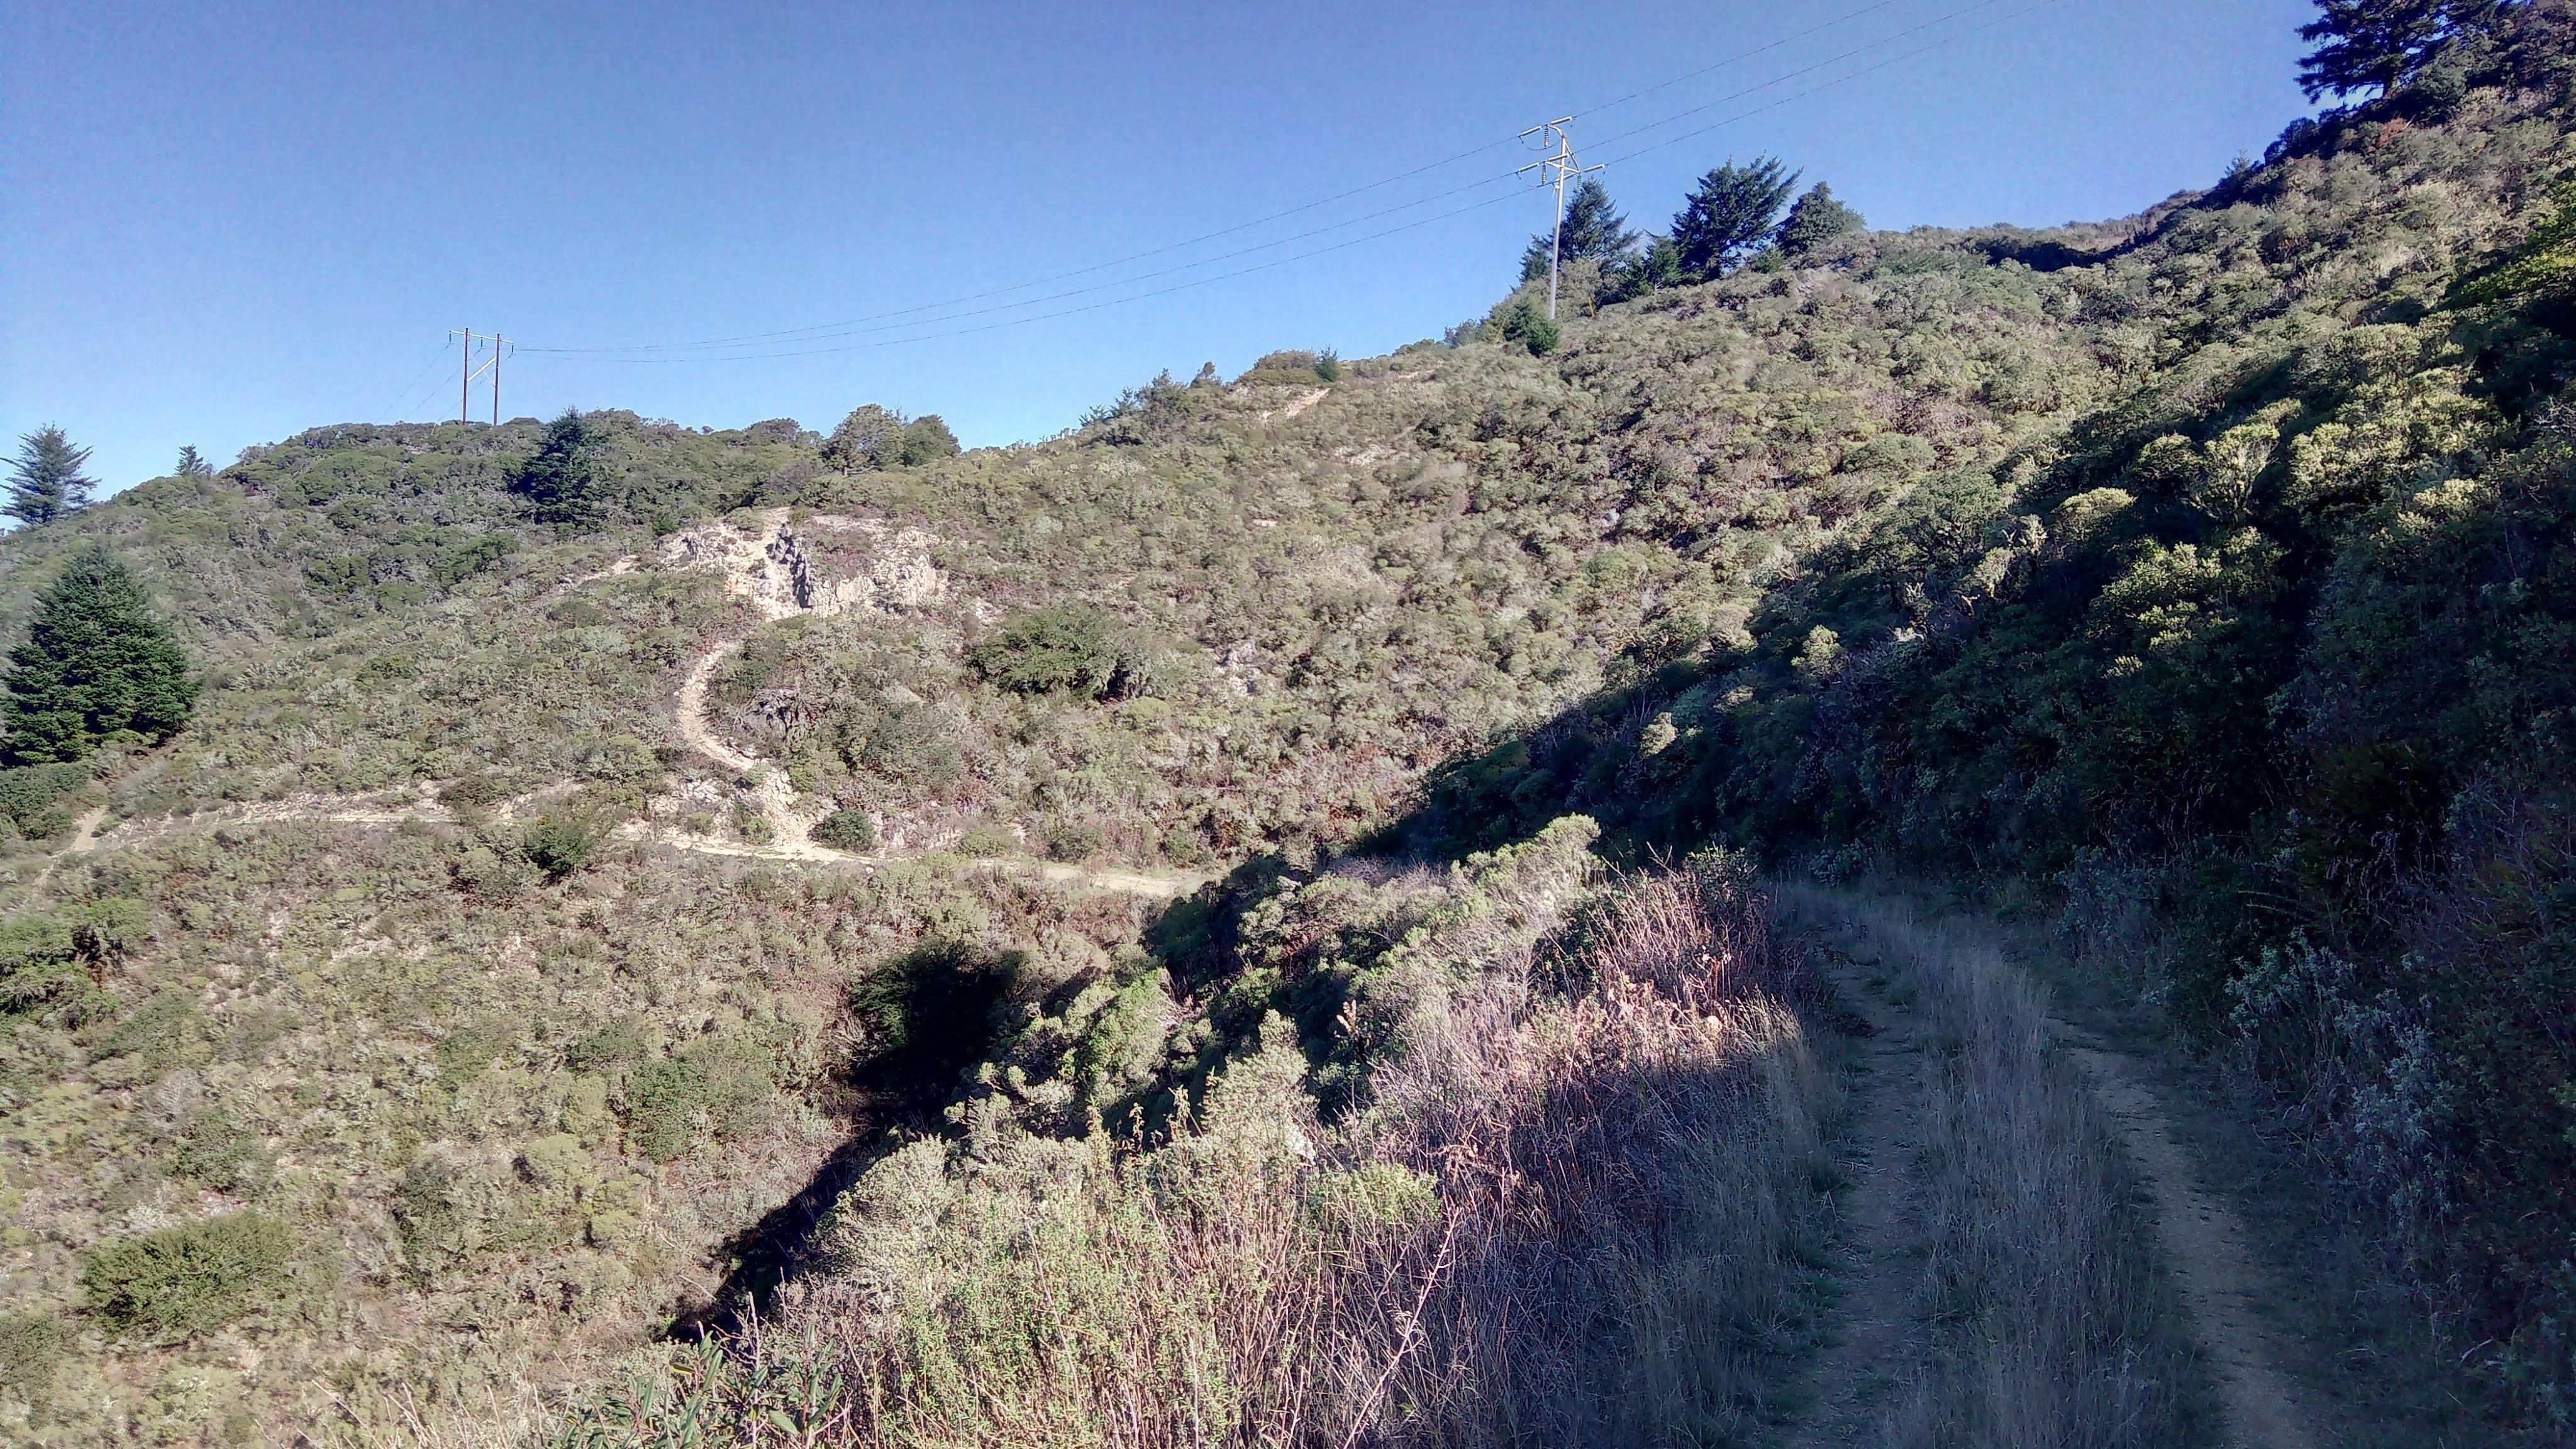 Spine ridge trail